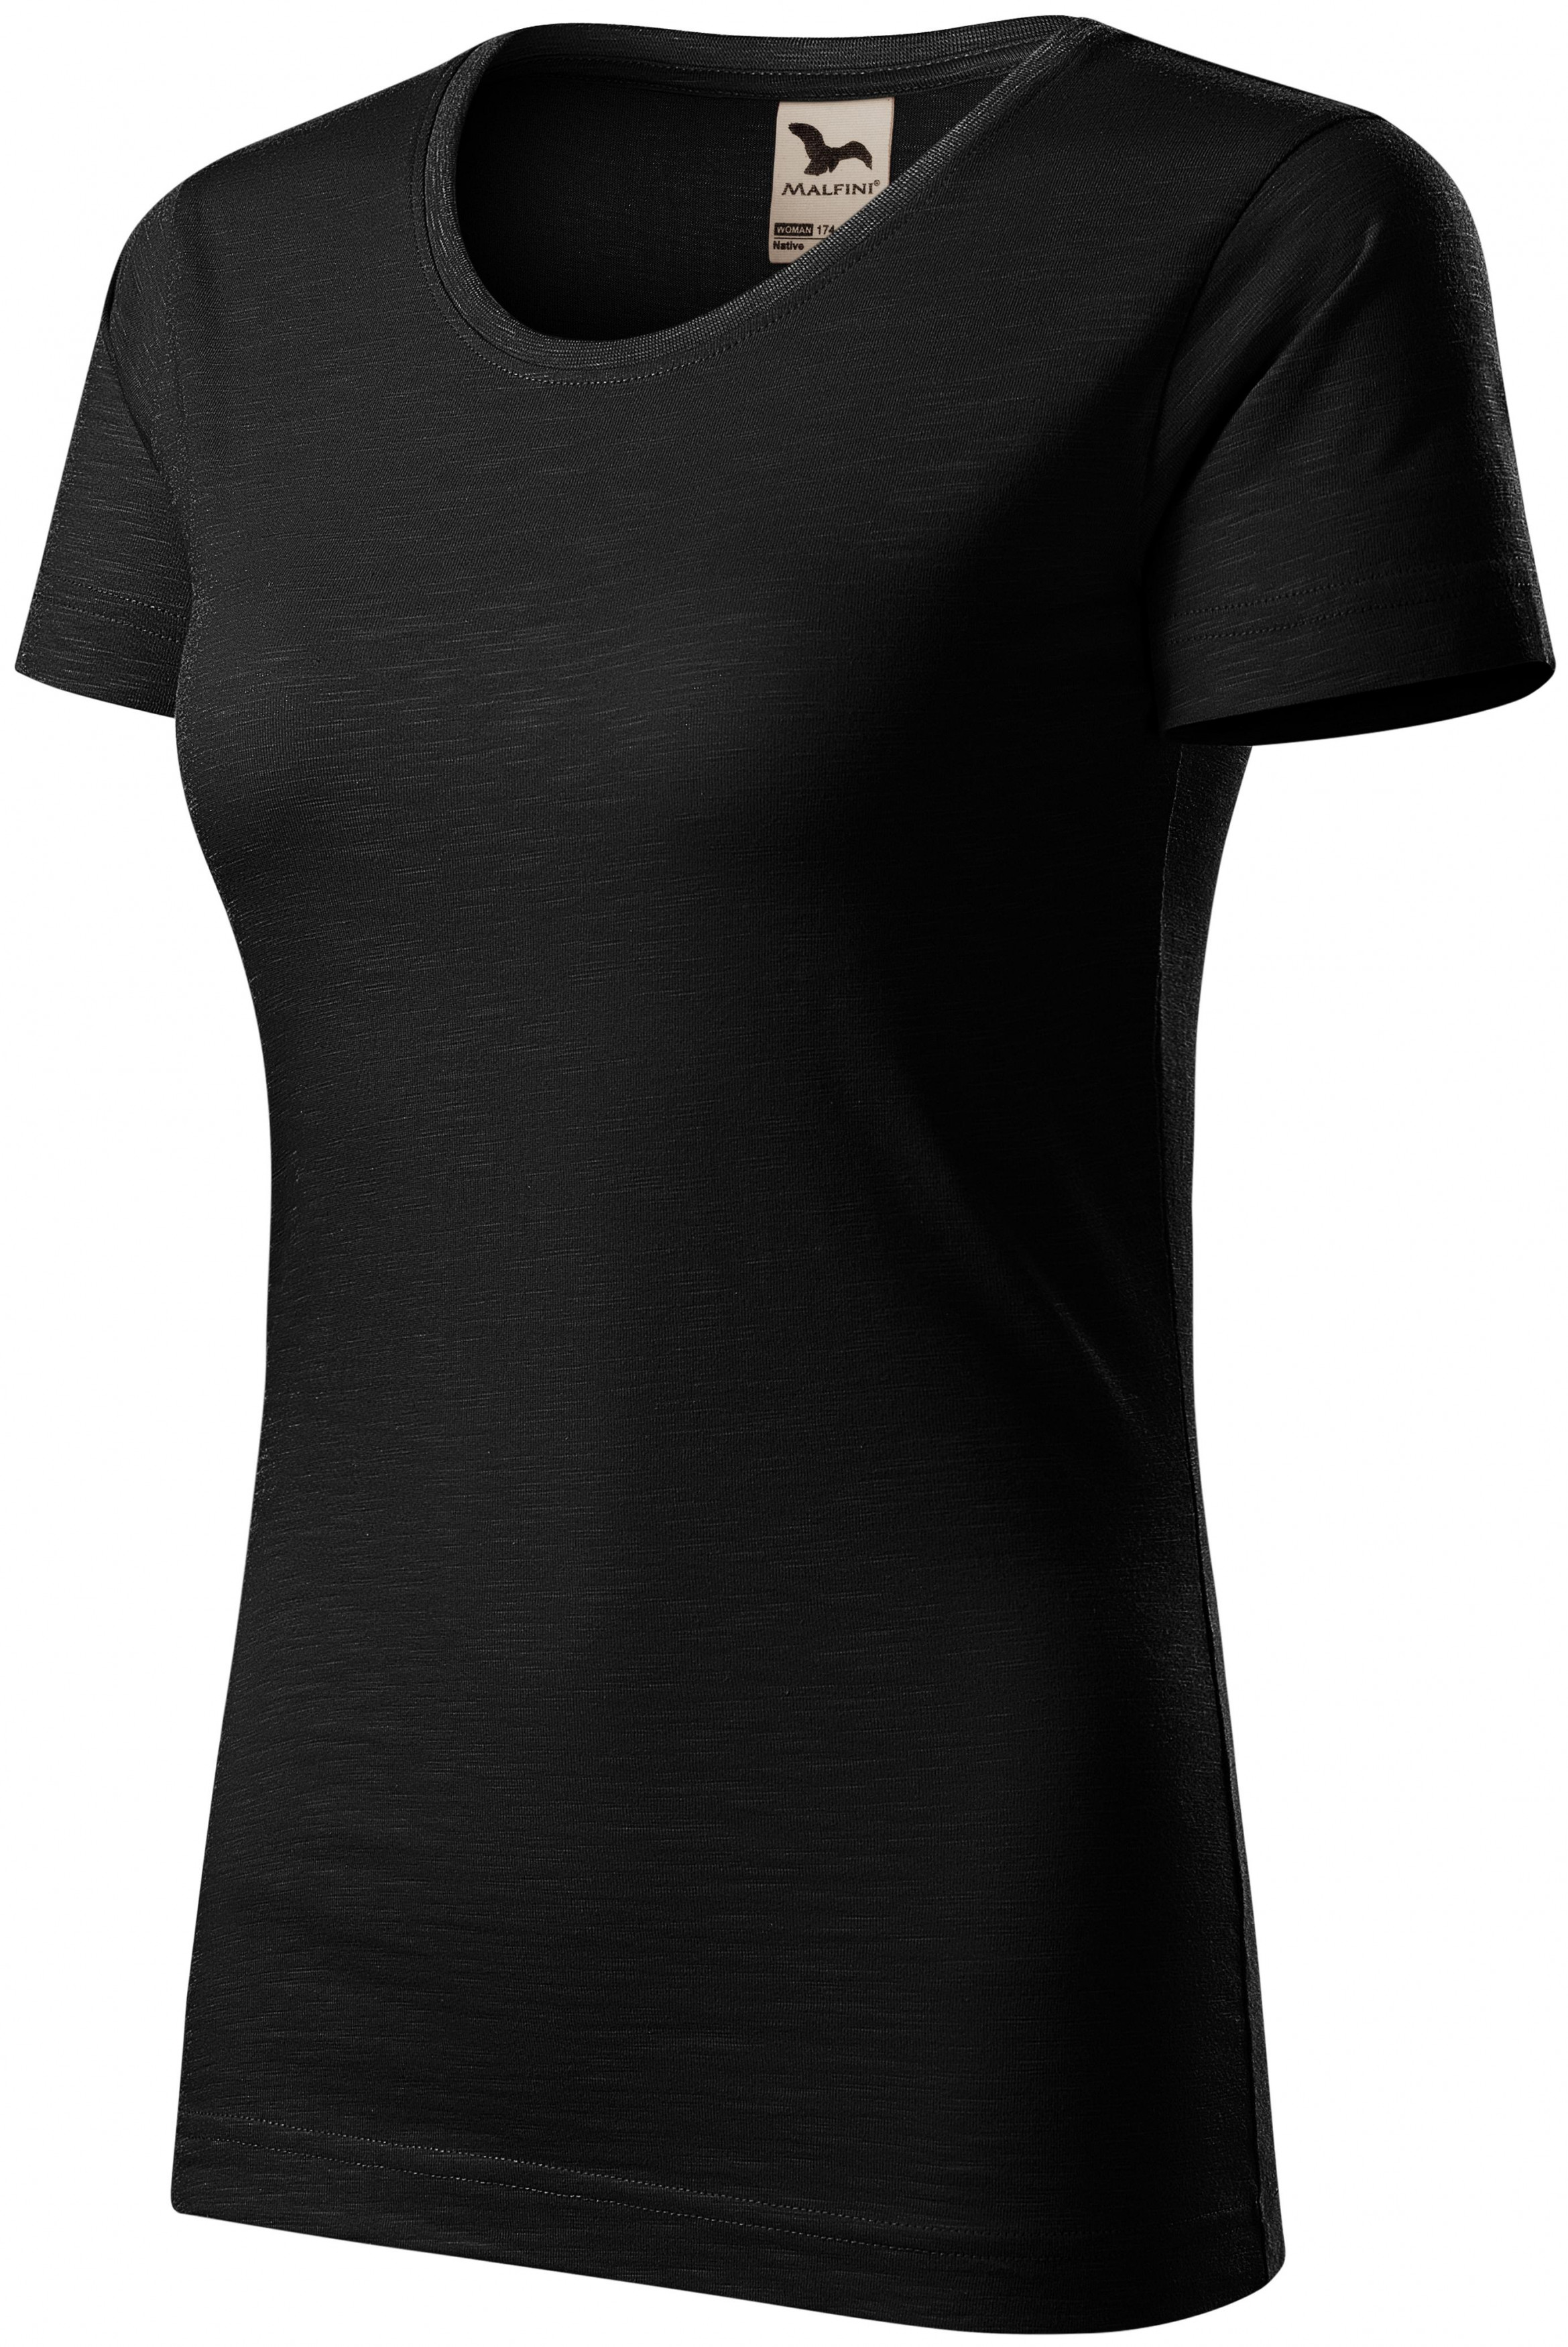 Dámske tričko, štruktúrovaná organická bavlna, čierna, S